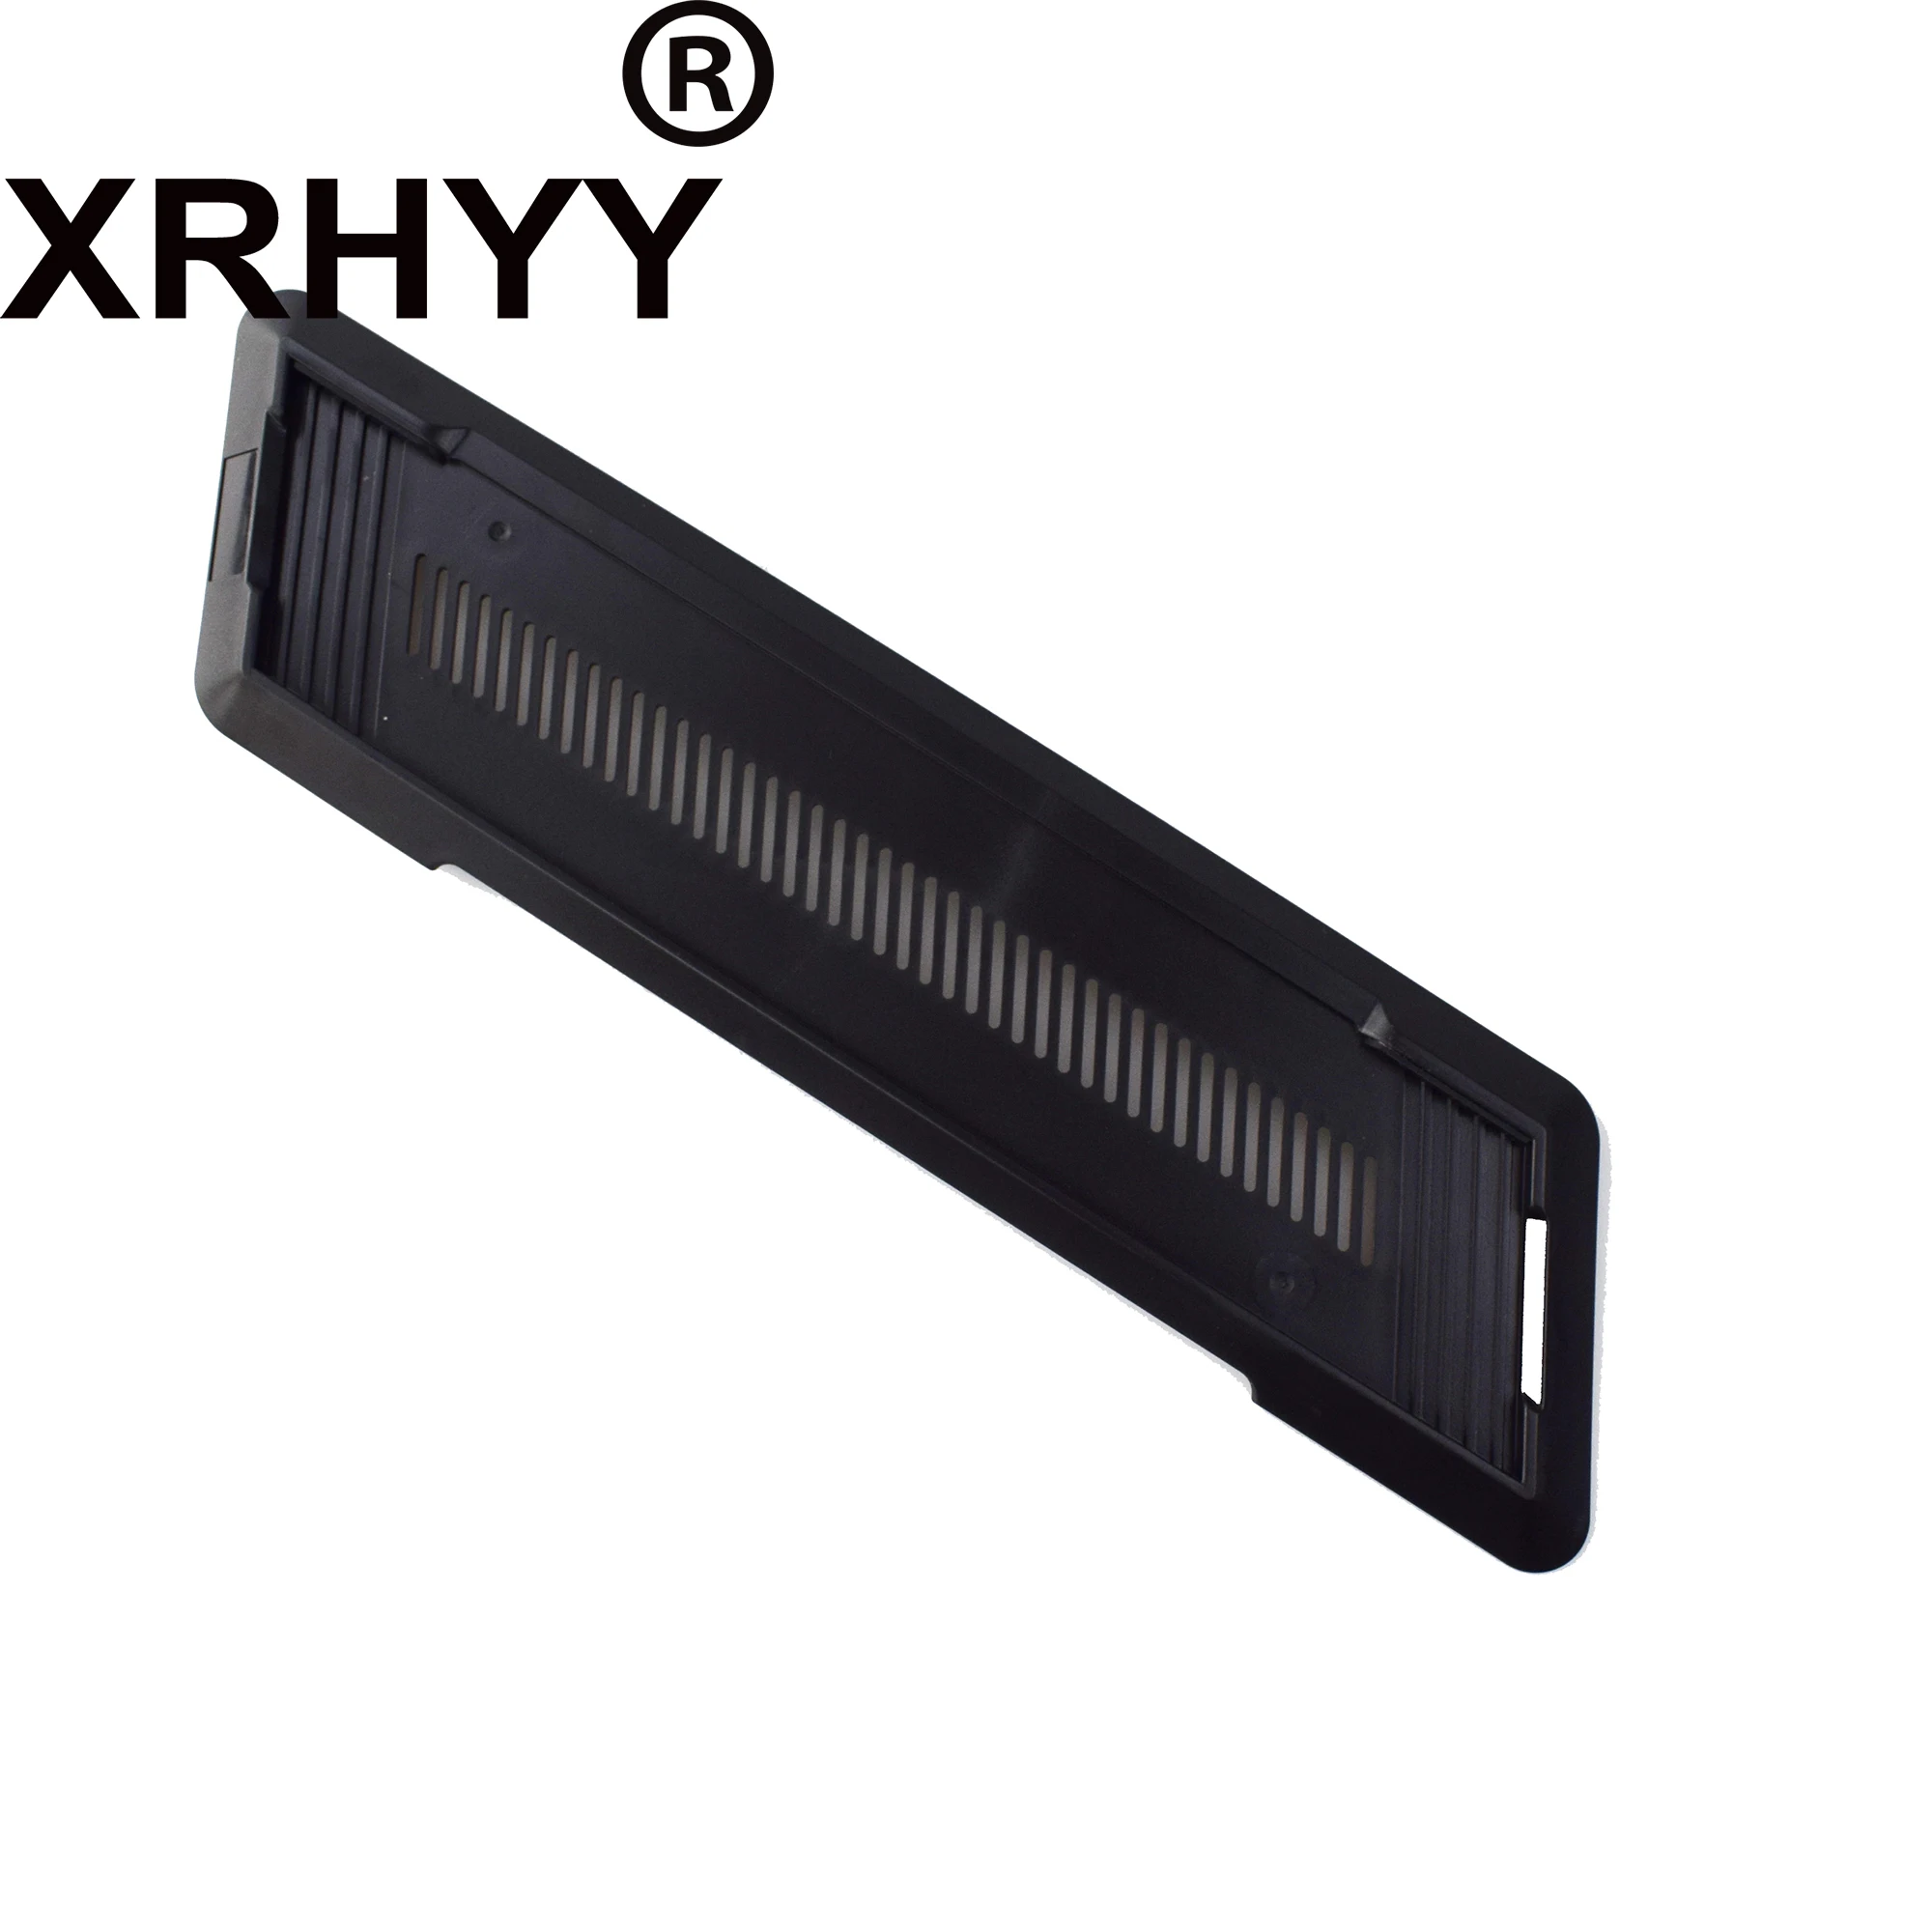 XRHYY pionowy stojak dla Playstation PS4 konsoli stojak czarny, nie dla PS4 Slim/Pro